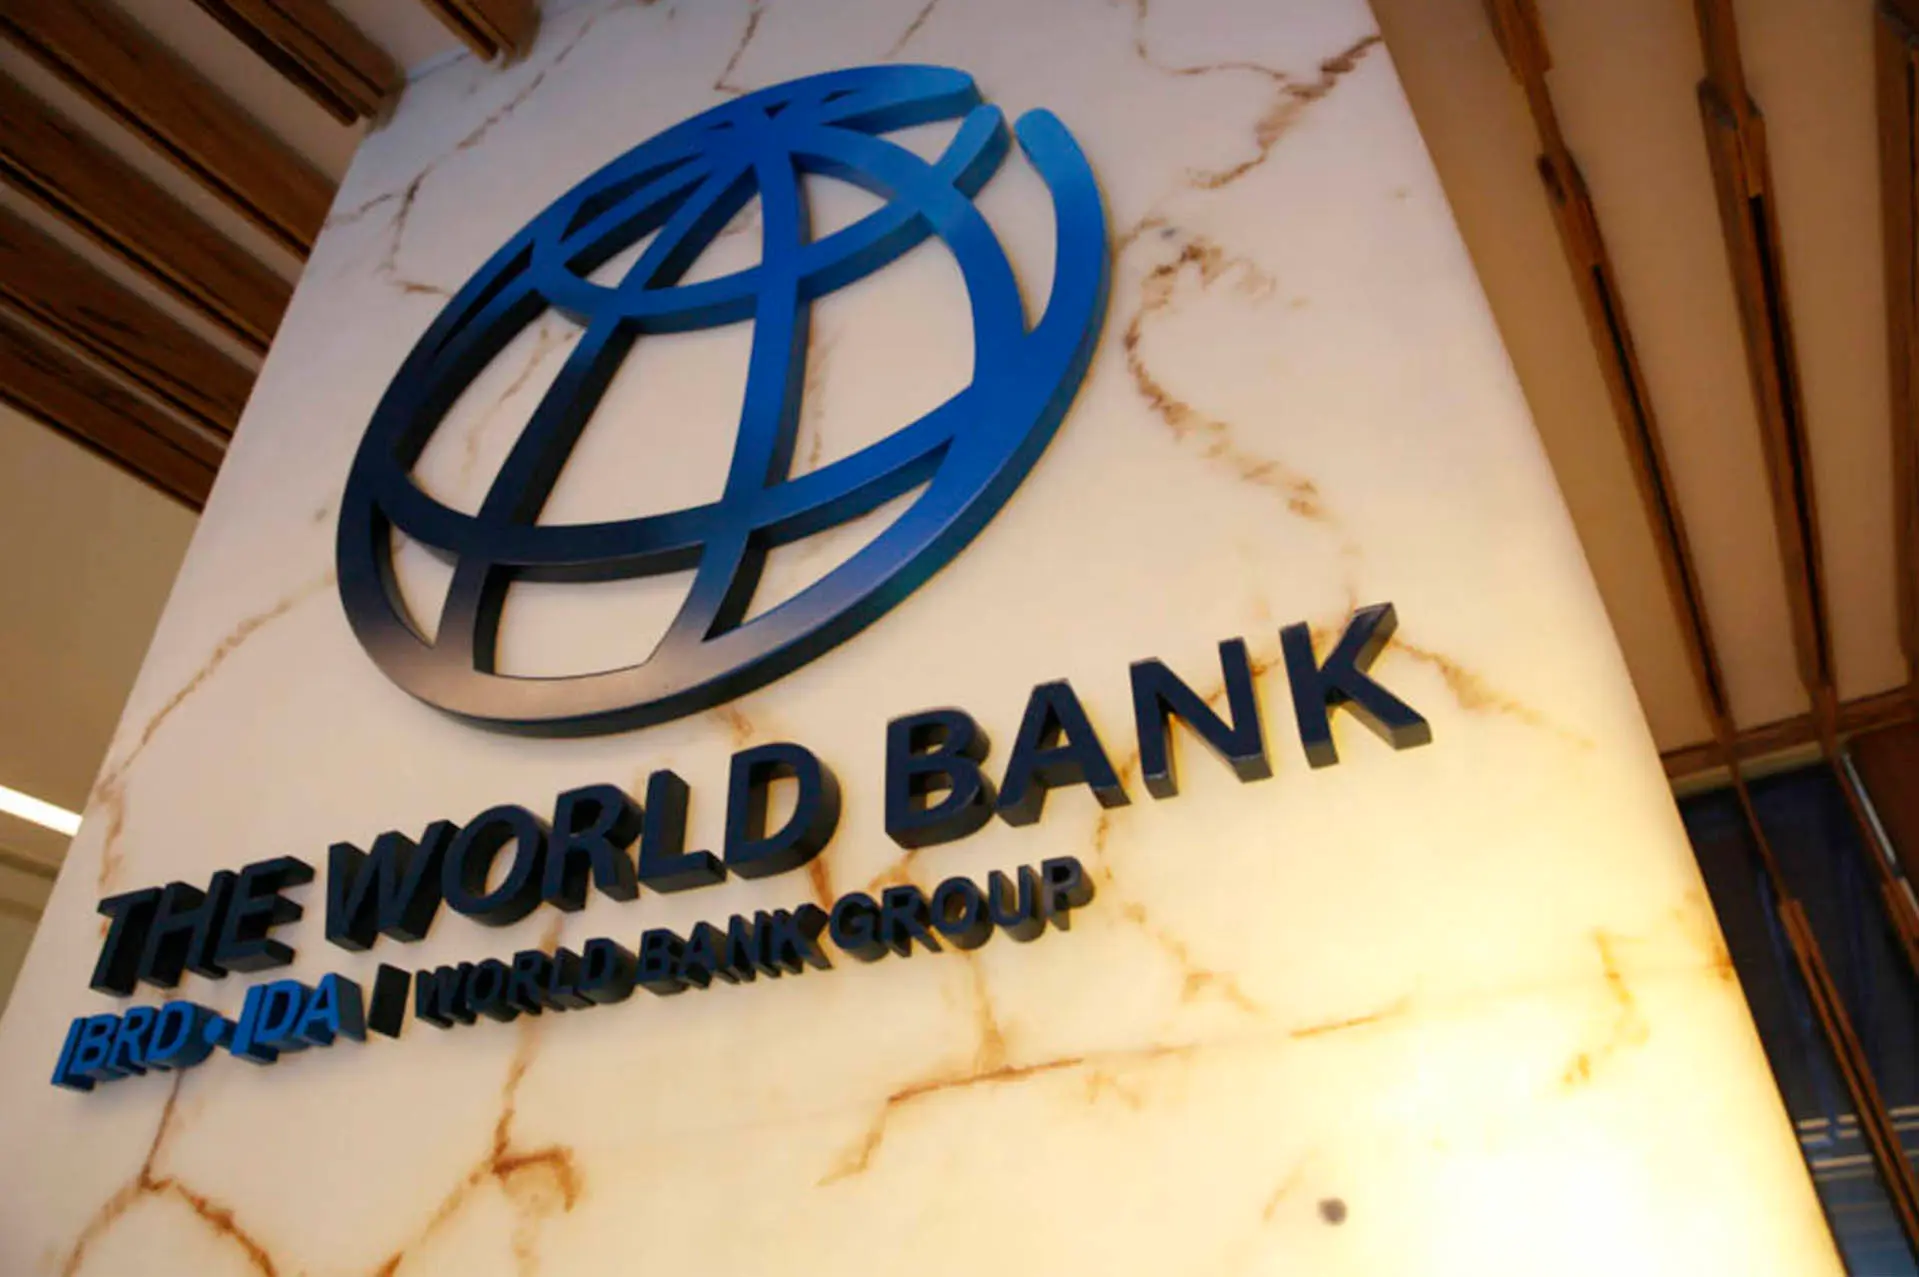 Bank Dunia Berencana Tambah Jumlah Bantuan ke Ukraina